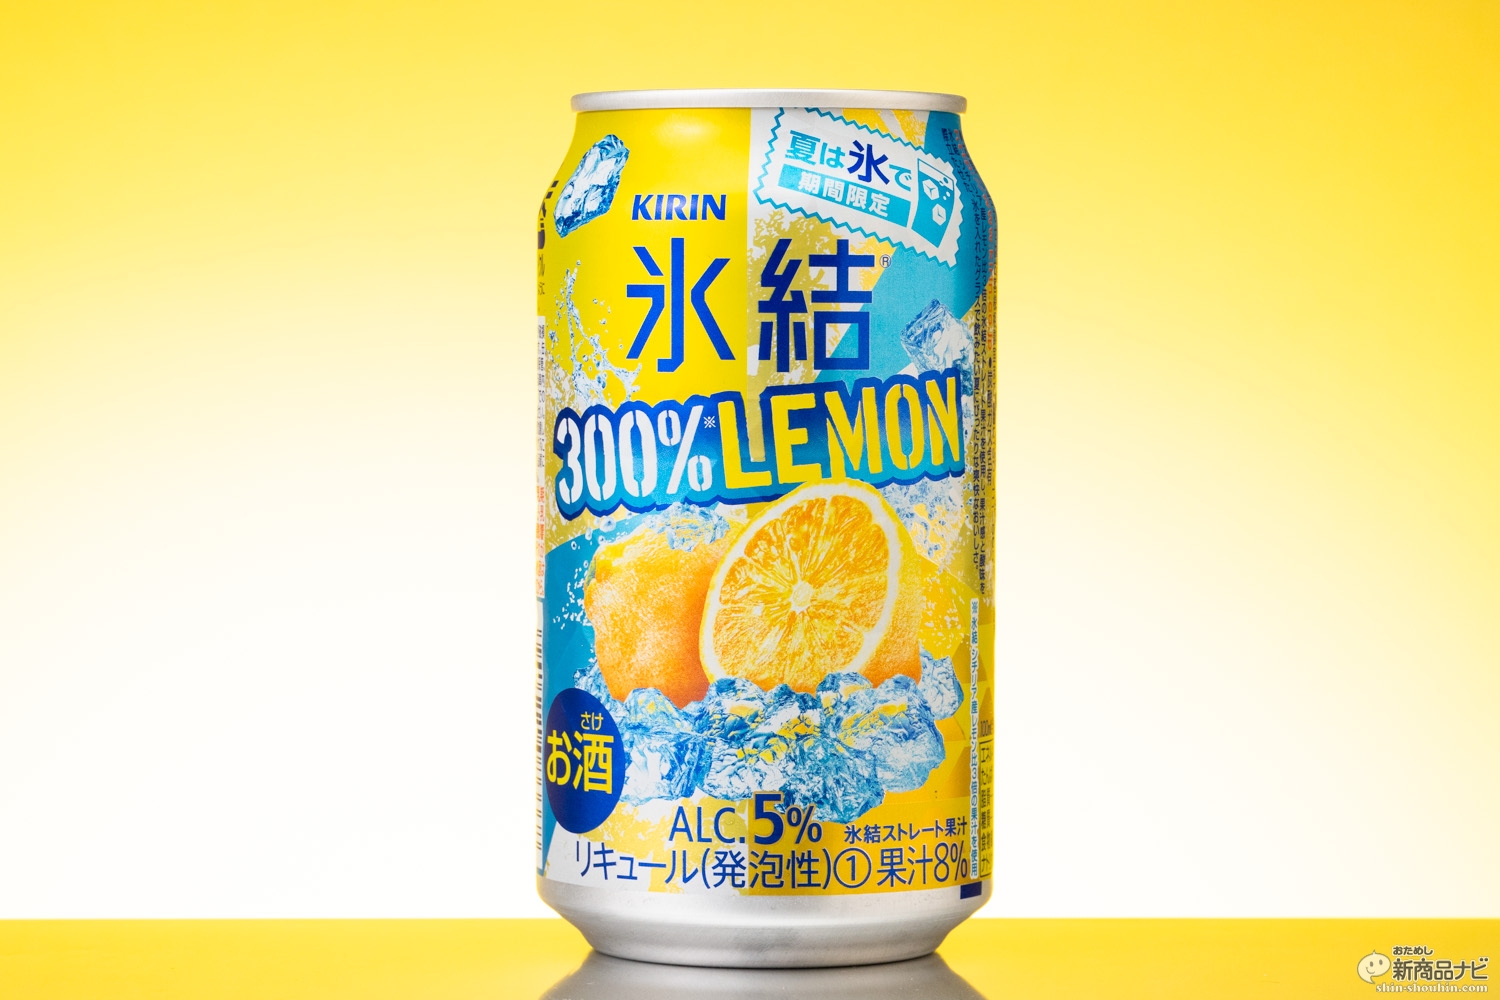 おためし新商品ナビ Blog Archive 激スッパの向こうにフルーティーさがあふれる キリン 氷結 300 レモン を体験